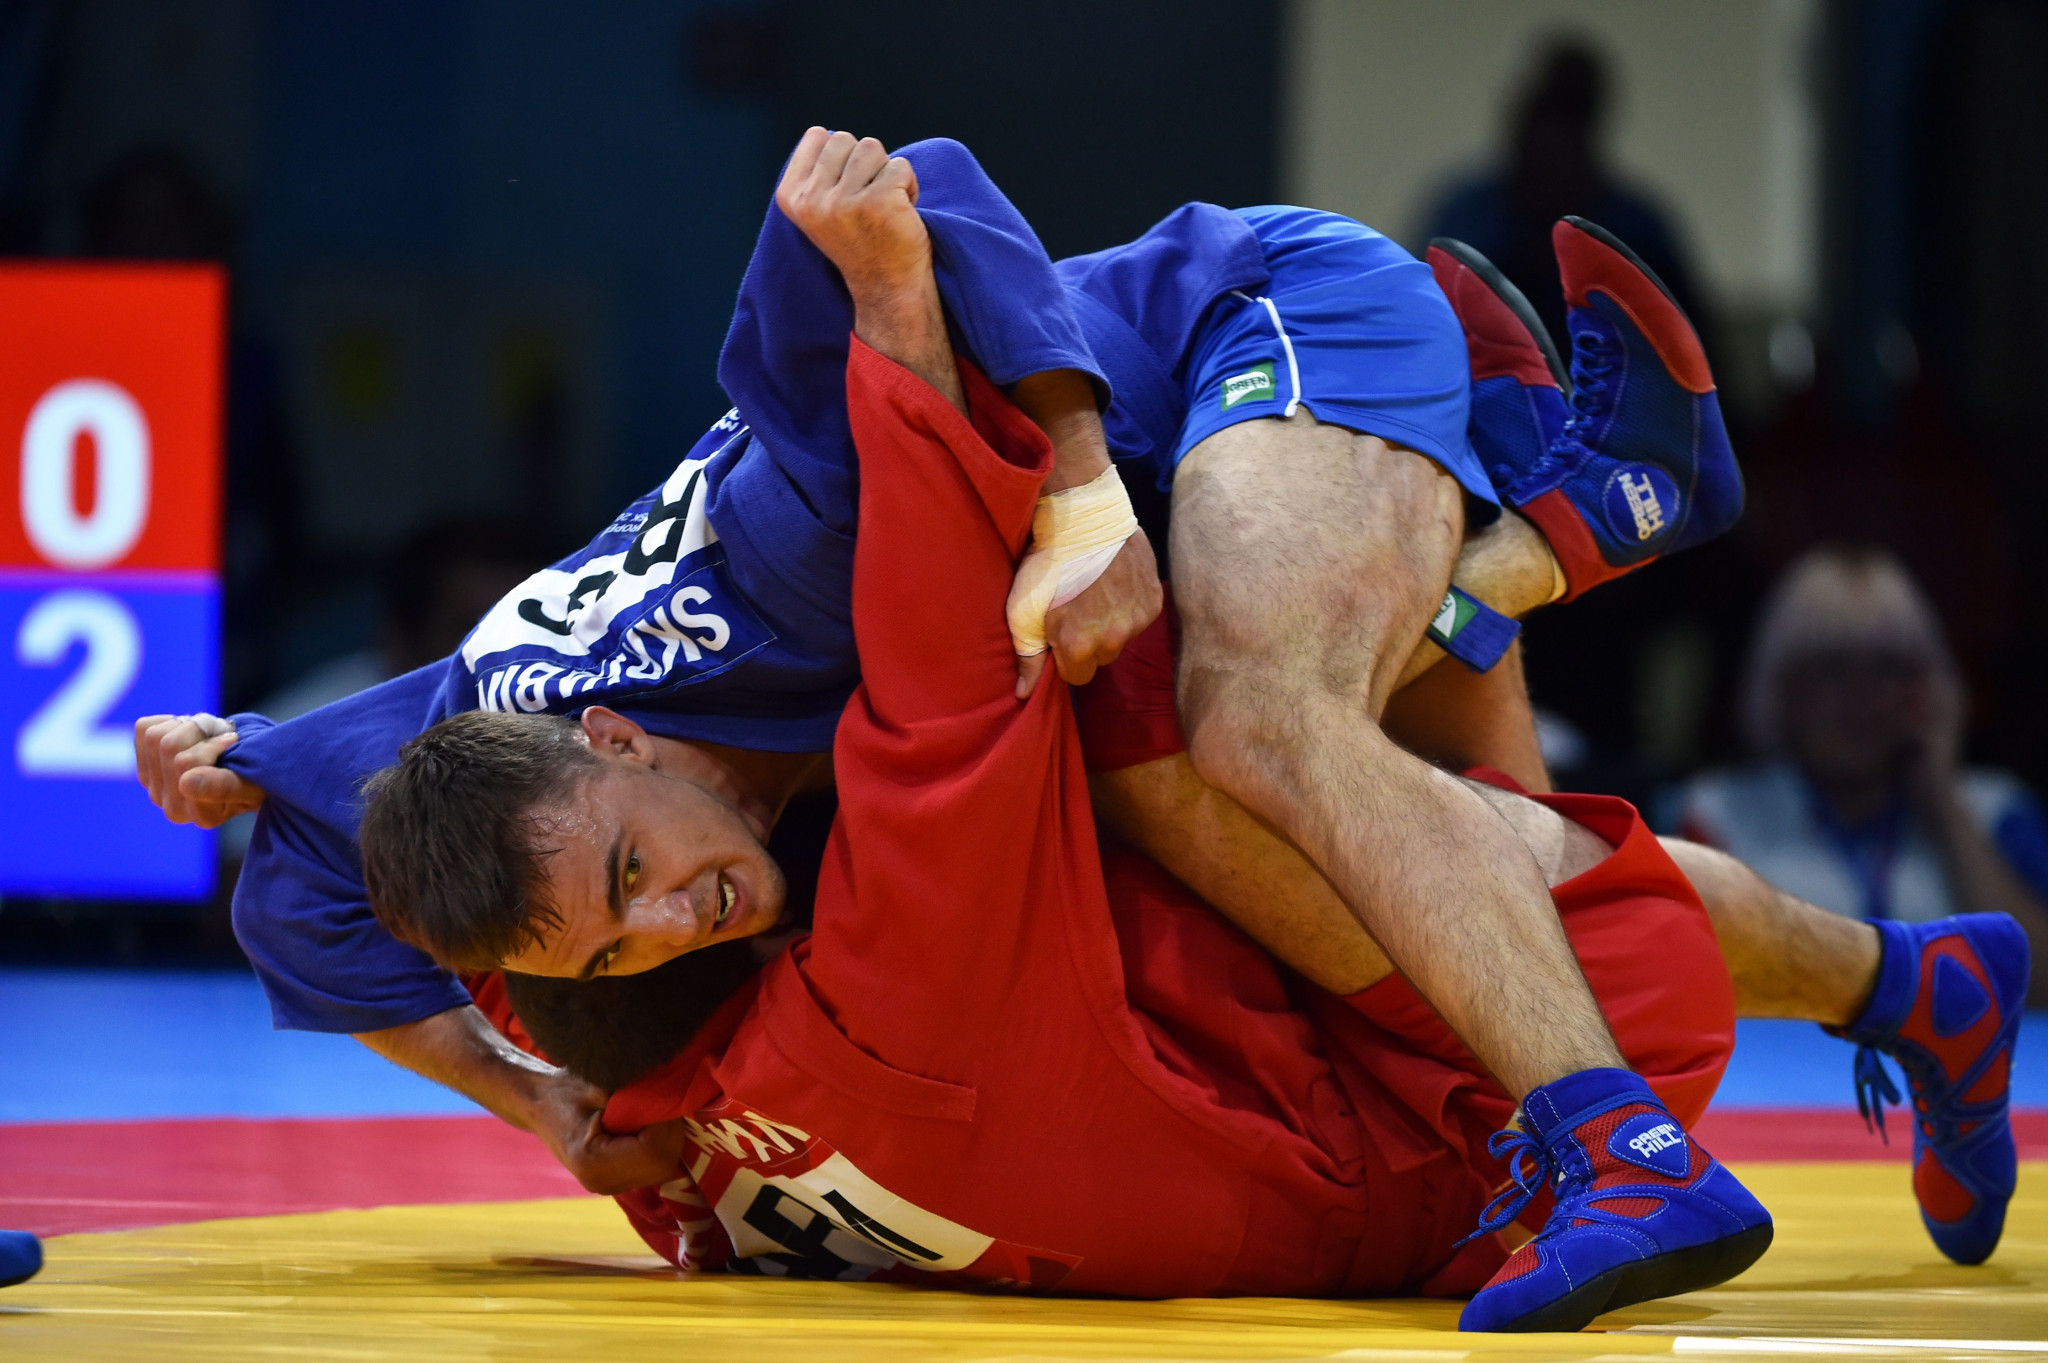 Kurzhev promotes integrity among sambo athletes